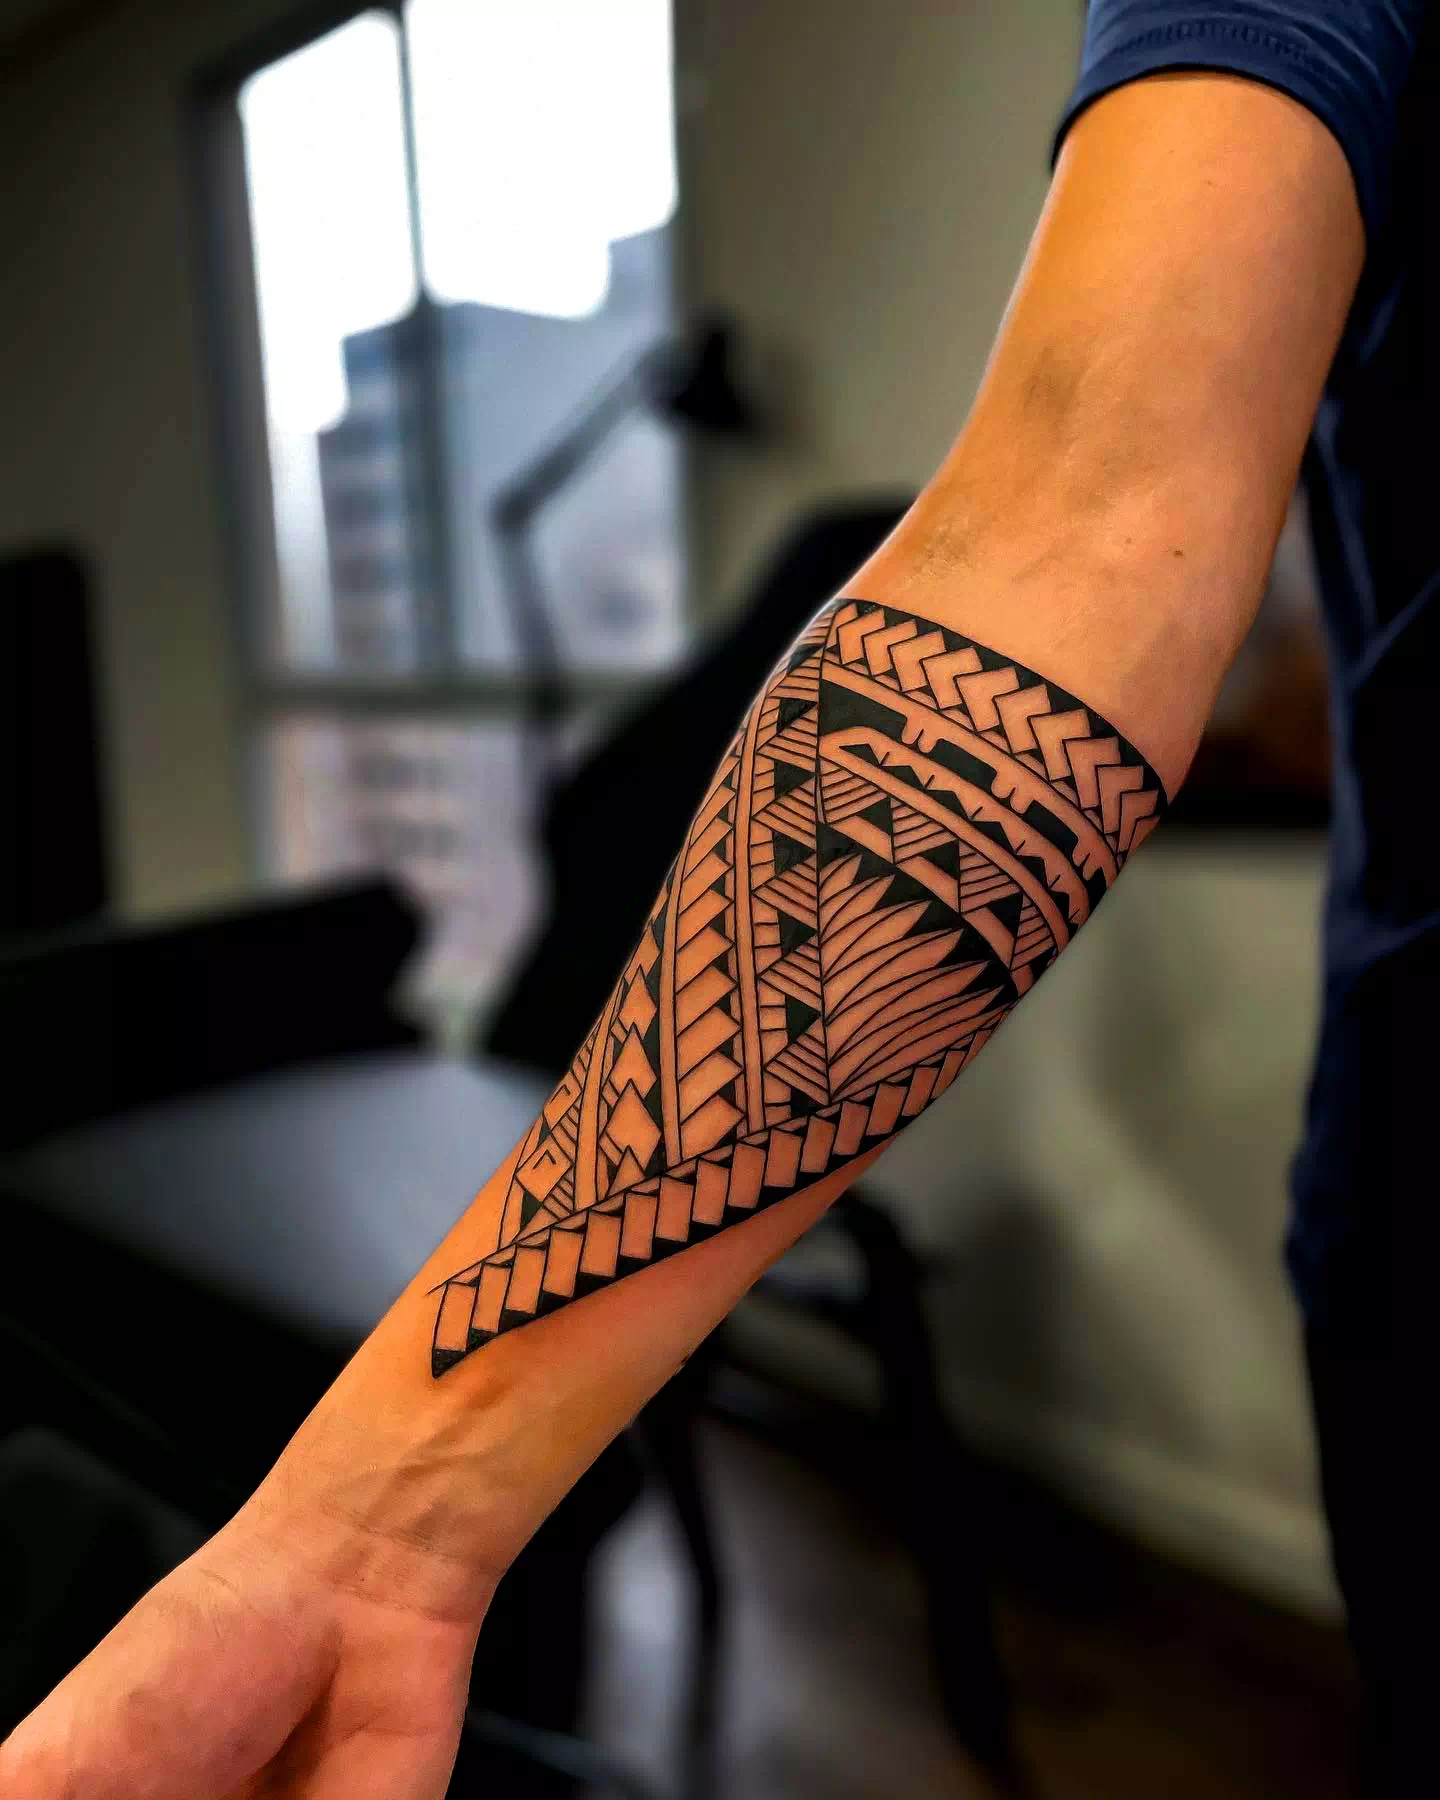 Tatuajes maoríes